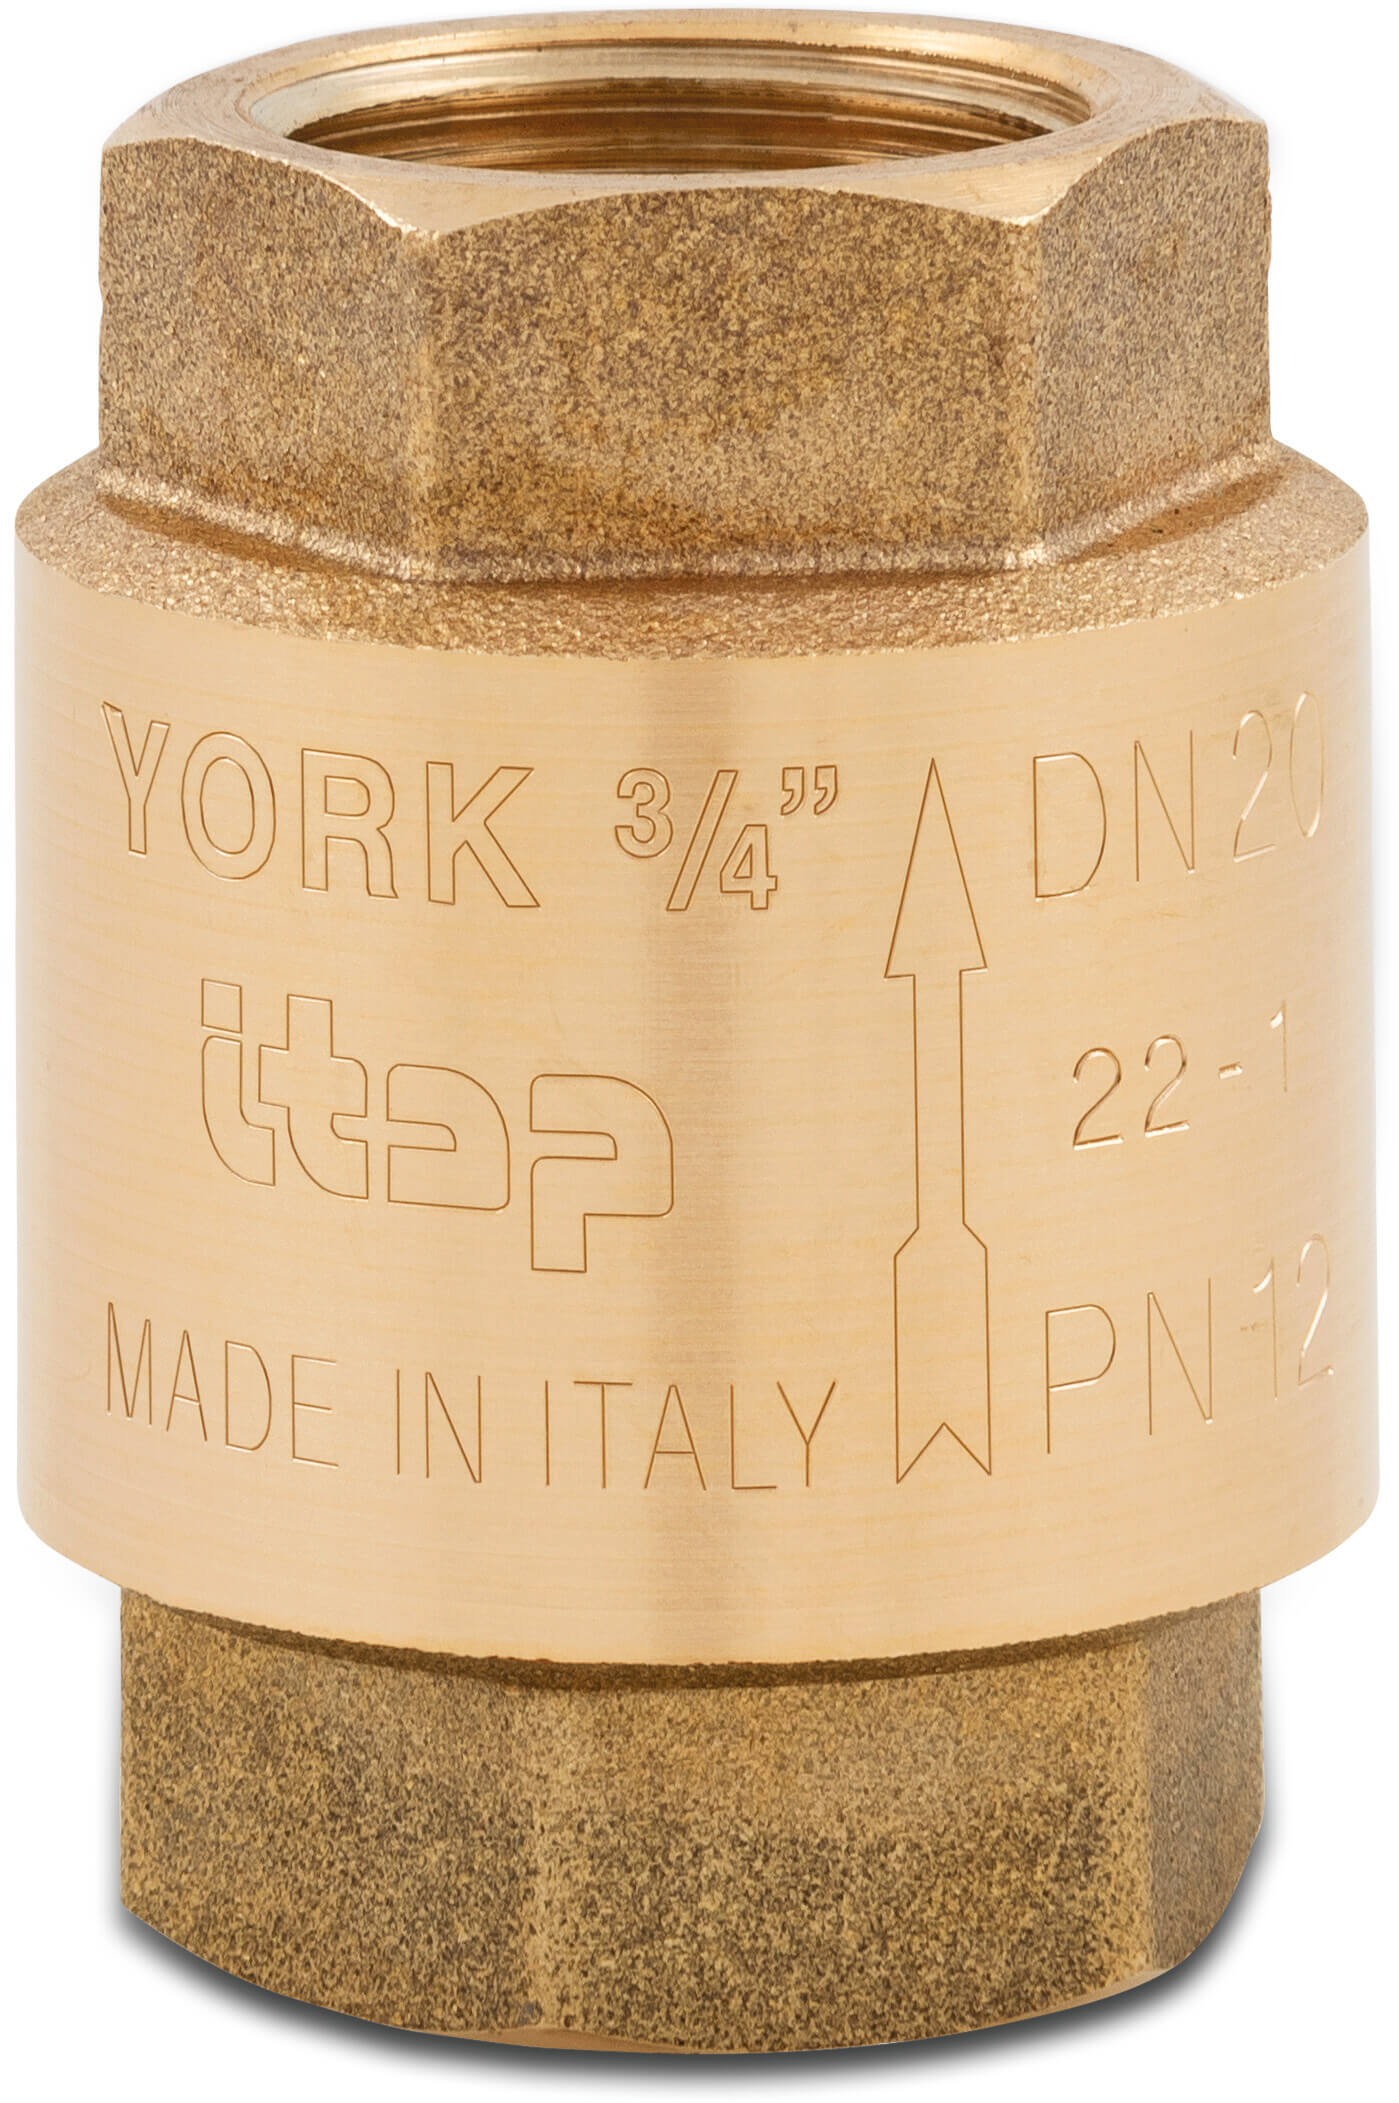 Itap Non return valve spring loaded brass 3/8" female thread 12bar type York 103